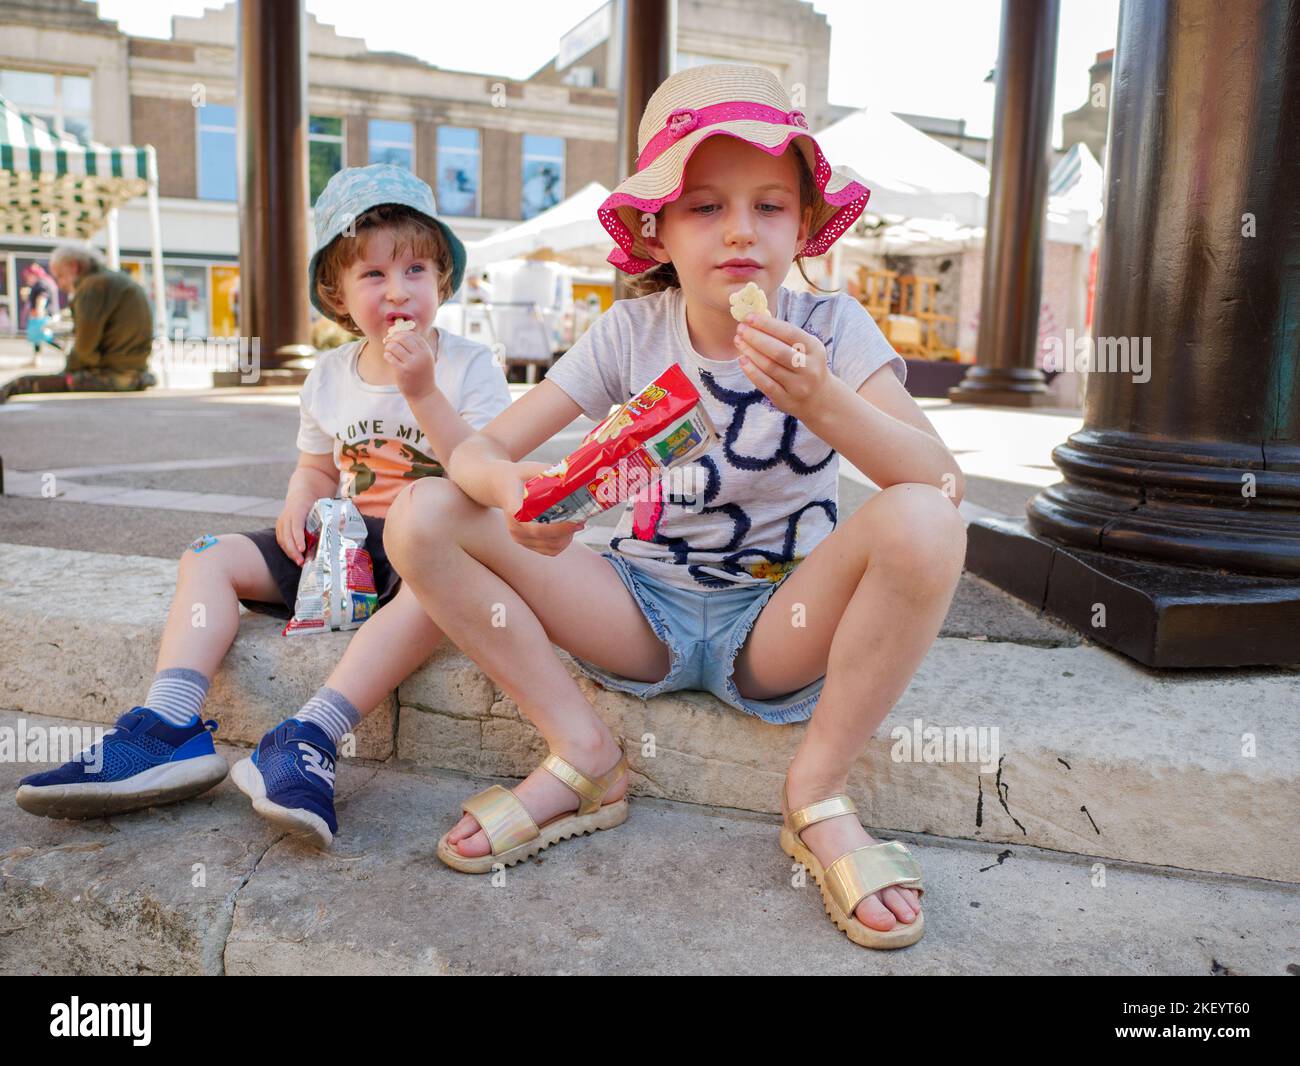 Jeunes enfants, un garçon et une fille, manger des collations assis sur le sol à l'extérieur, Royaume-Uni Banque D'Images